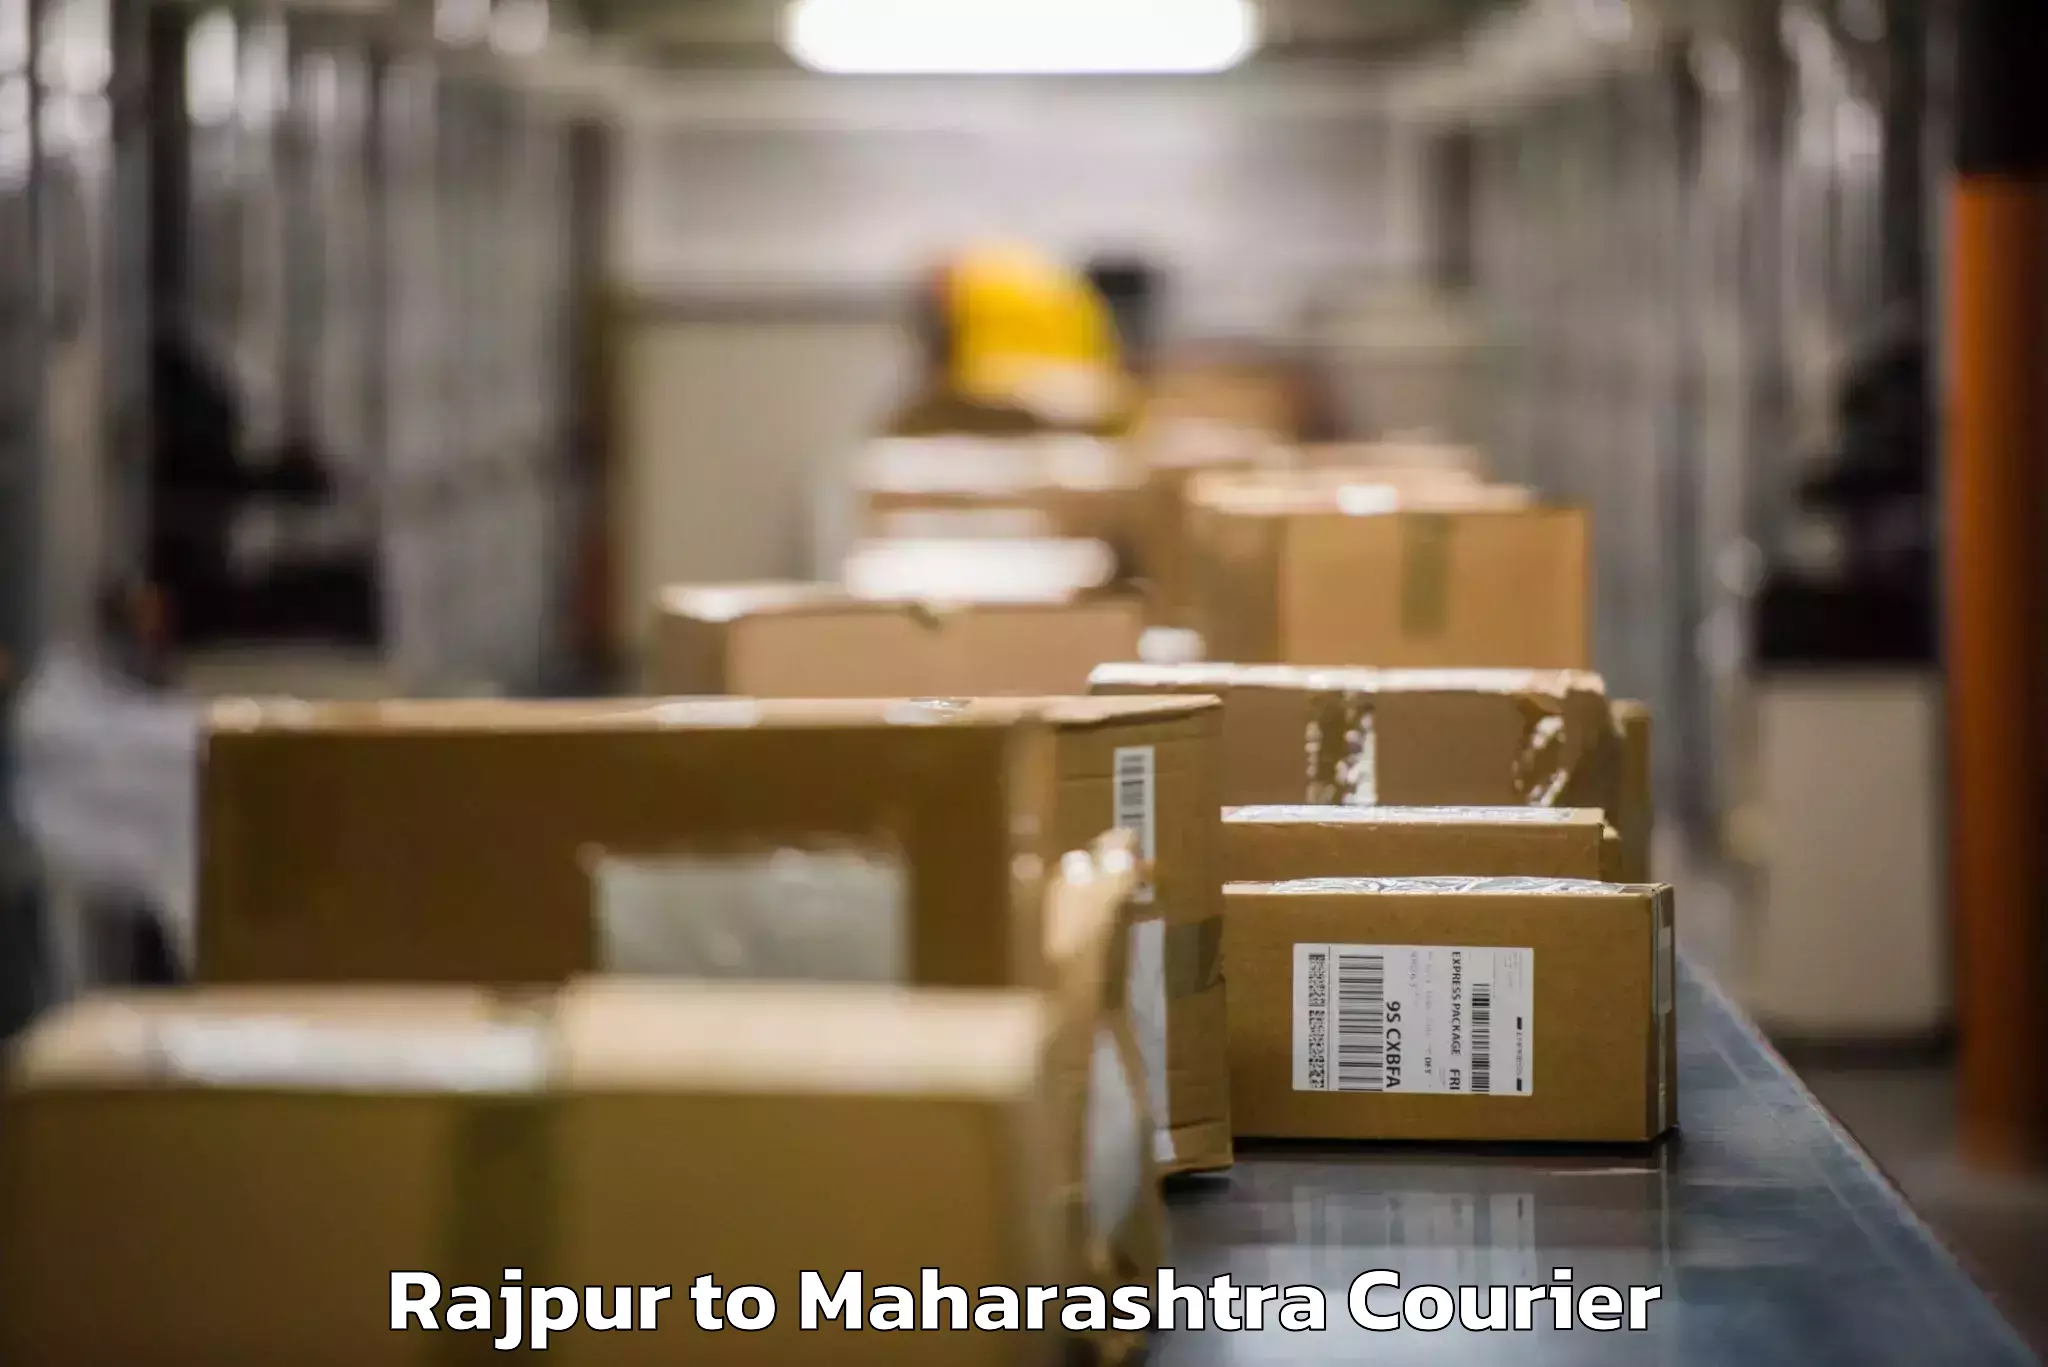 Digital baggage courier Rajpur to Mumbai Port